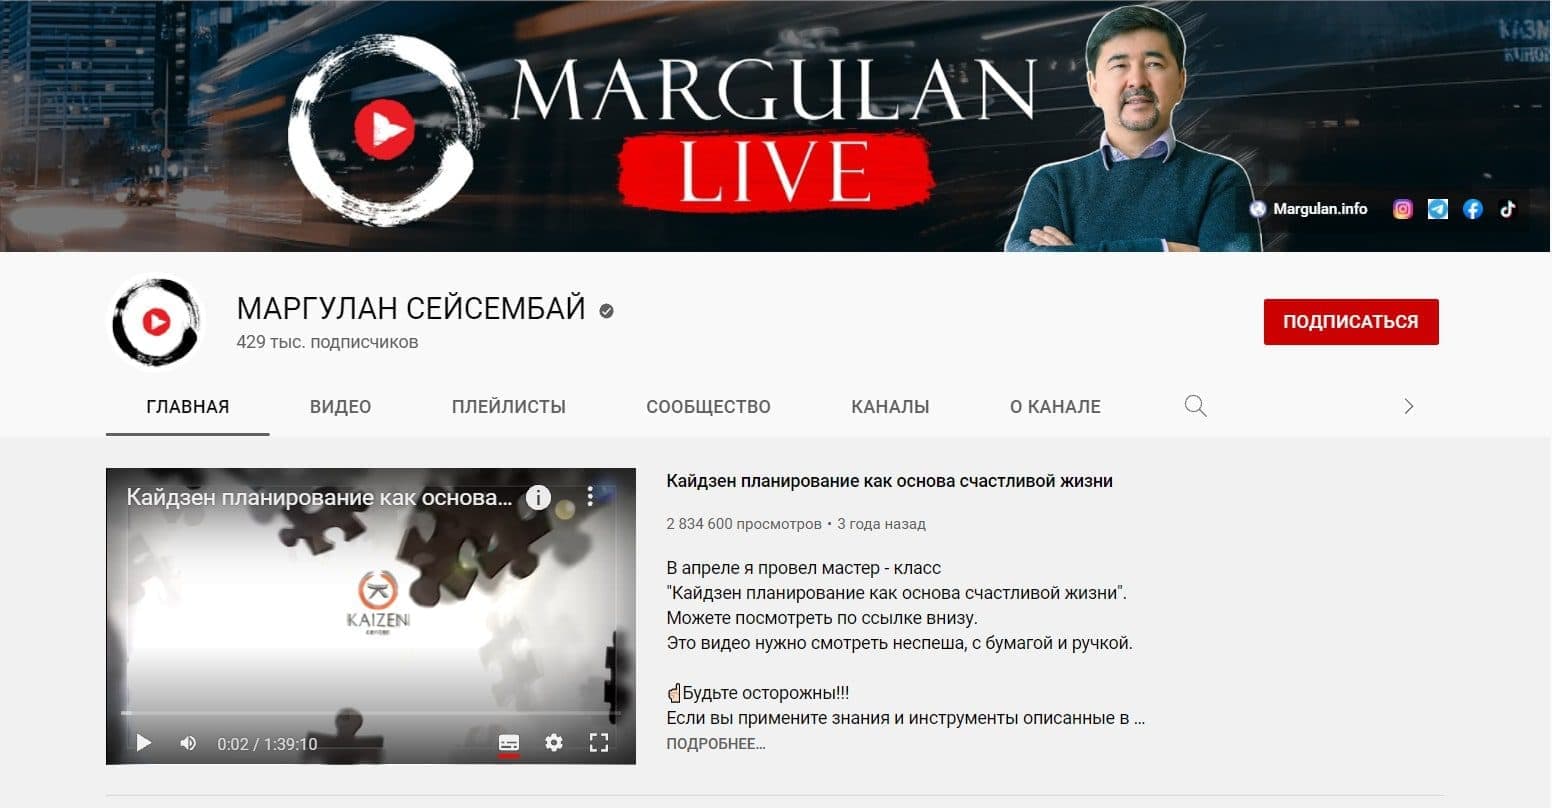 Ютуб канал Маргулана Сейсембаева